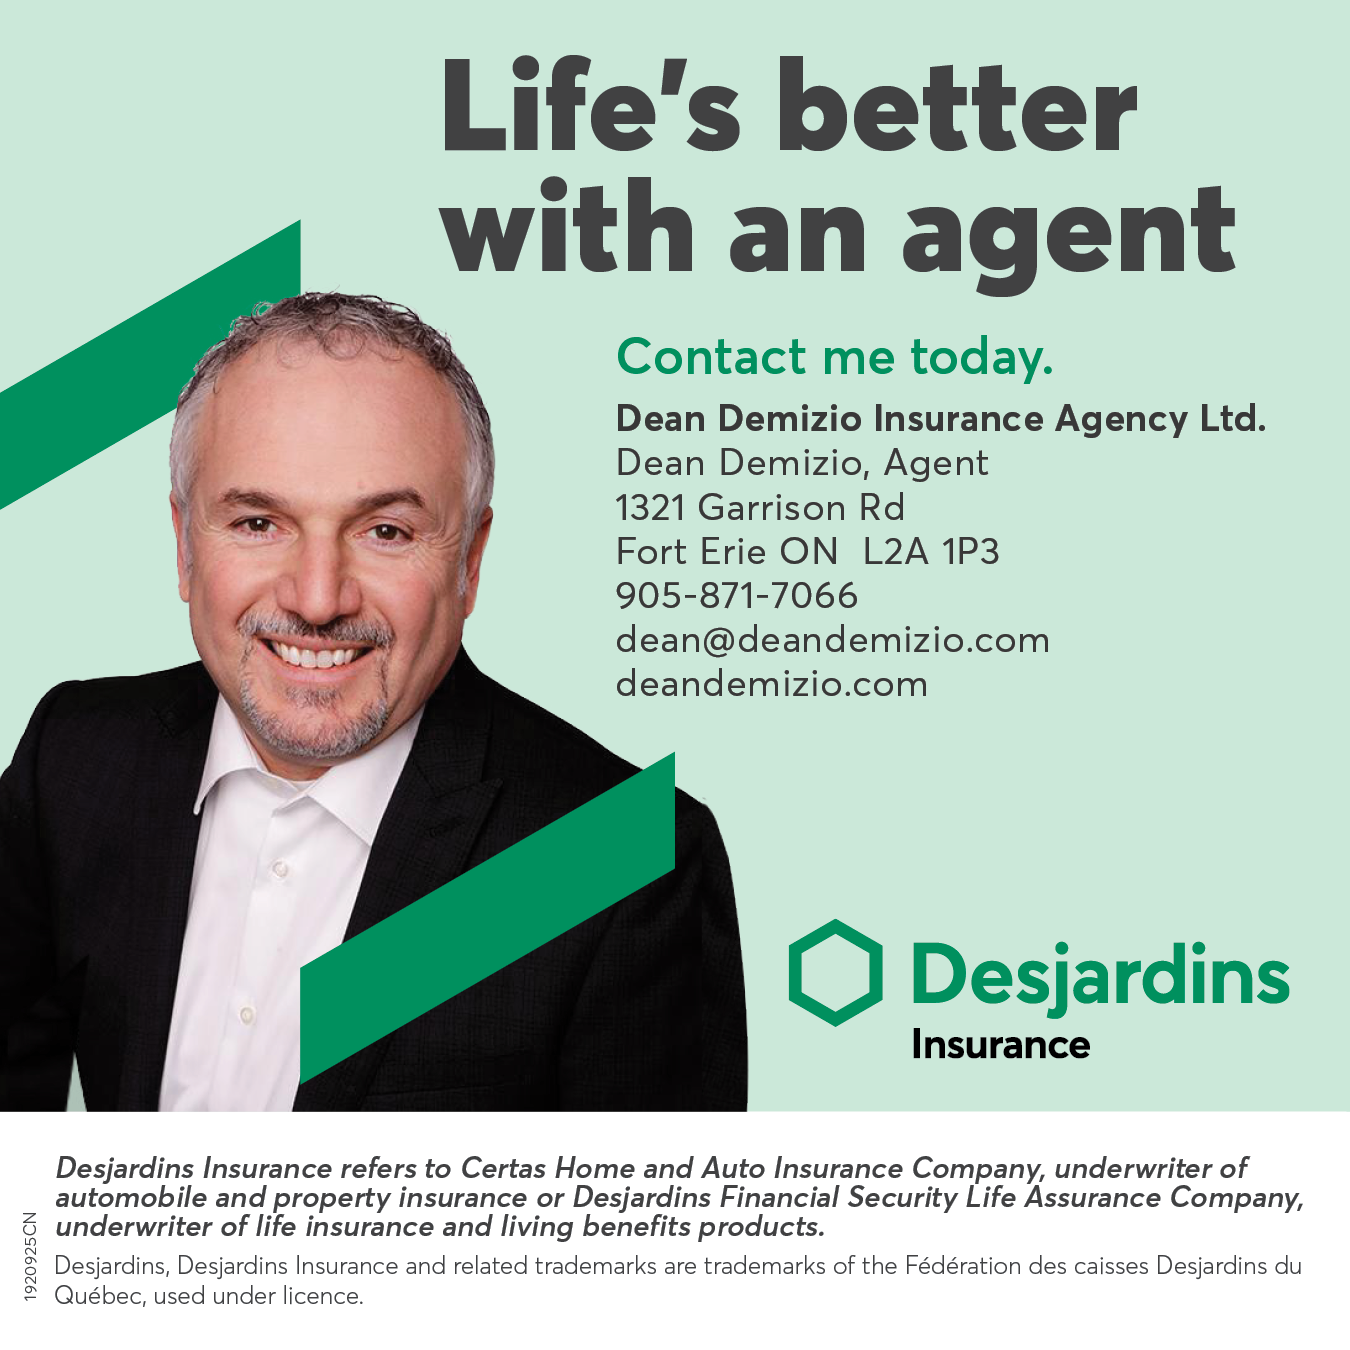 Dean Demizio Insurance Agency Ltd.